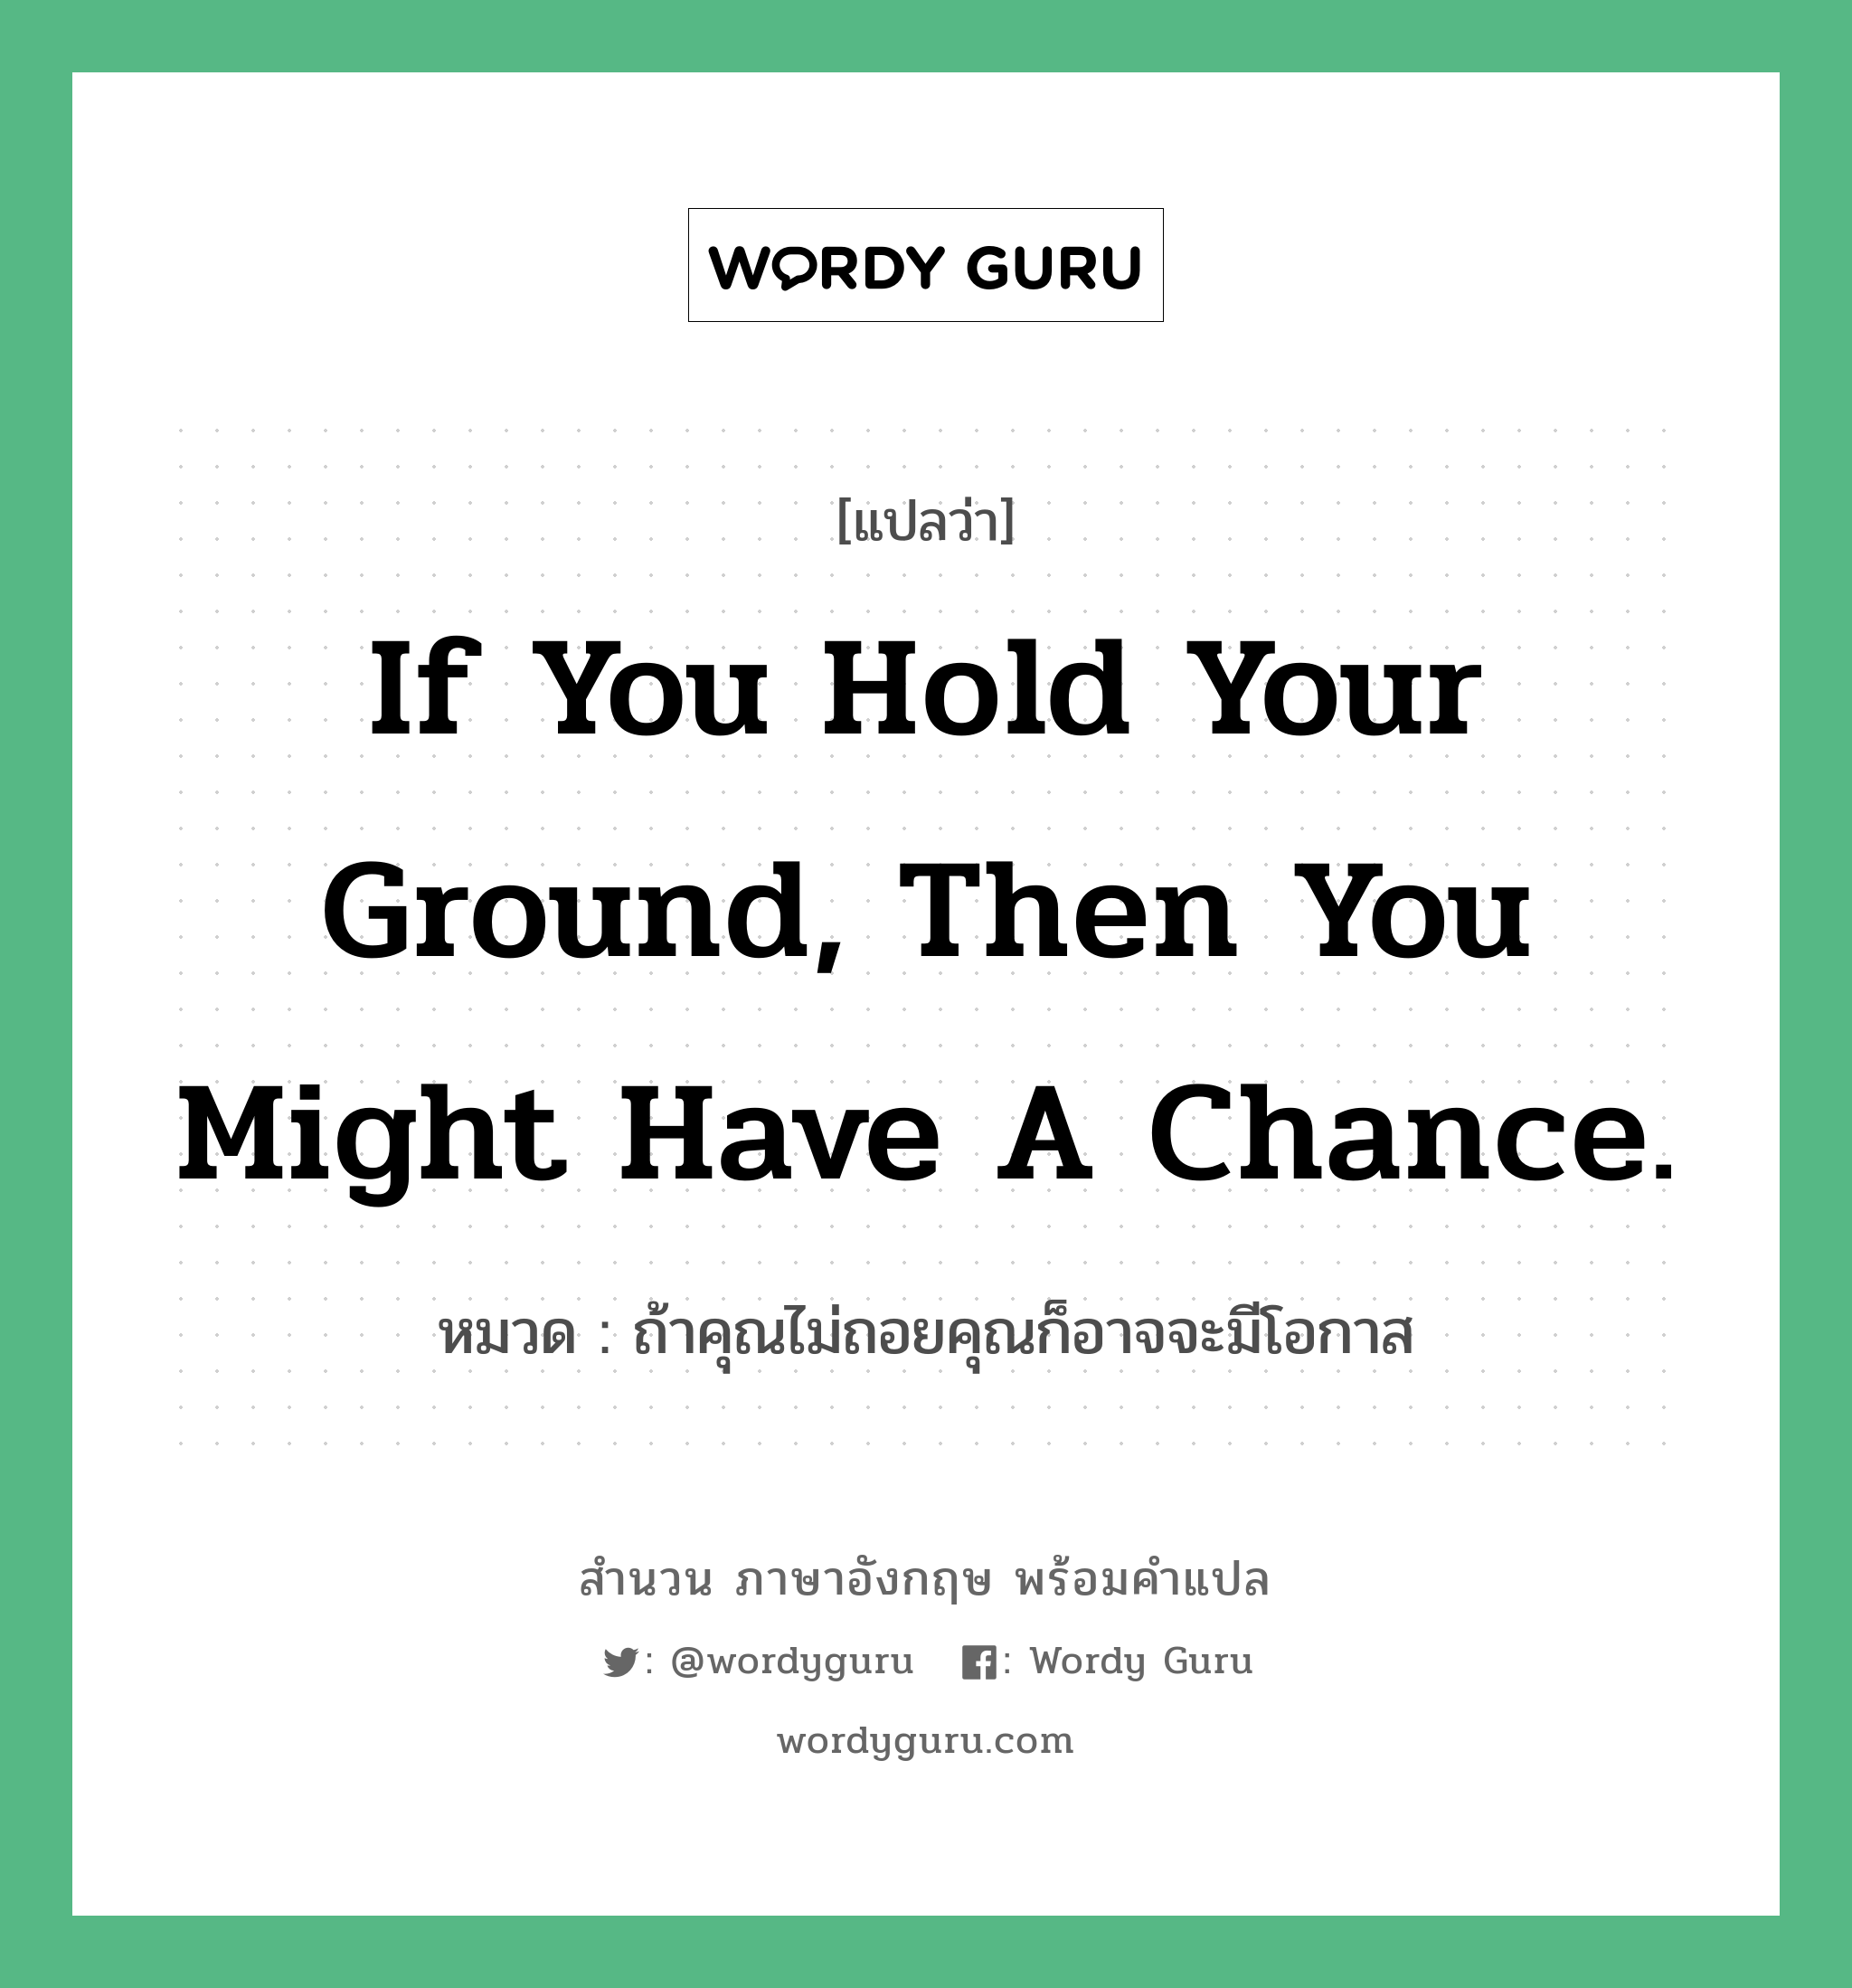 ถ้าคุณไม่ถอยคุณก็อาจจะมีโอกาส ภาษาอังกฤษ?, สำนวนภาษาอังกฤษ ถ้าคุณไม่ถอยคุณก็อาจจะมีโอกาส แปลว่า ถ้าคุณไม่ถอยคุณก็อาจจะมีโอกาส หมวด If you hold your ground, then you might have a chance.